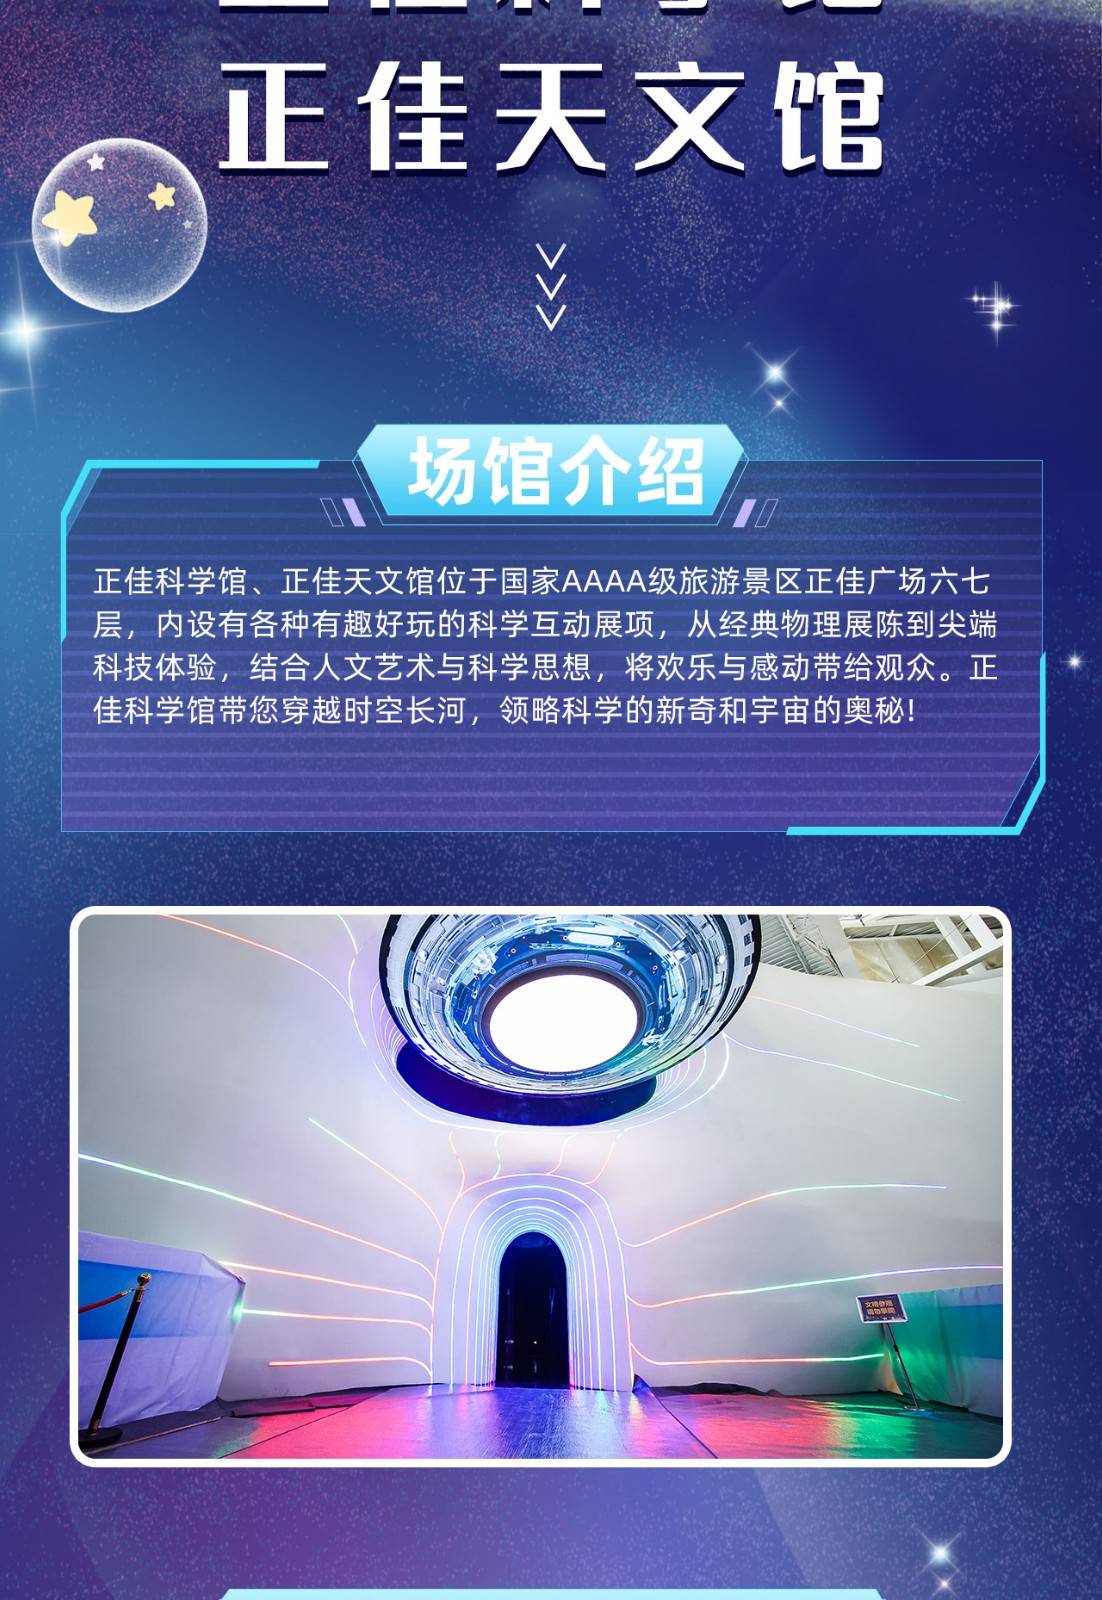 【2023年常规票】 广州正佳科学馆+天文馆联票-家庭套票